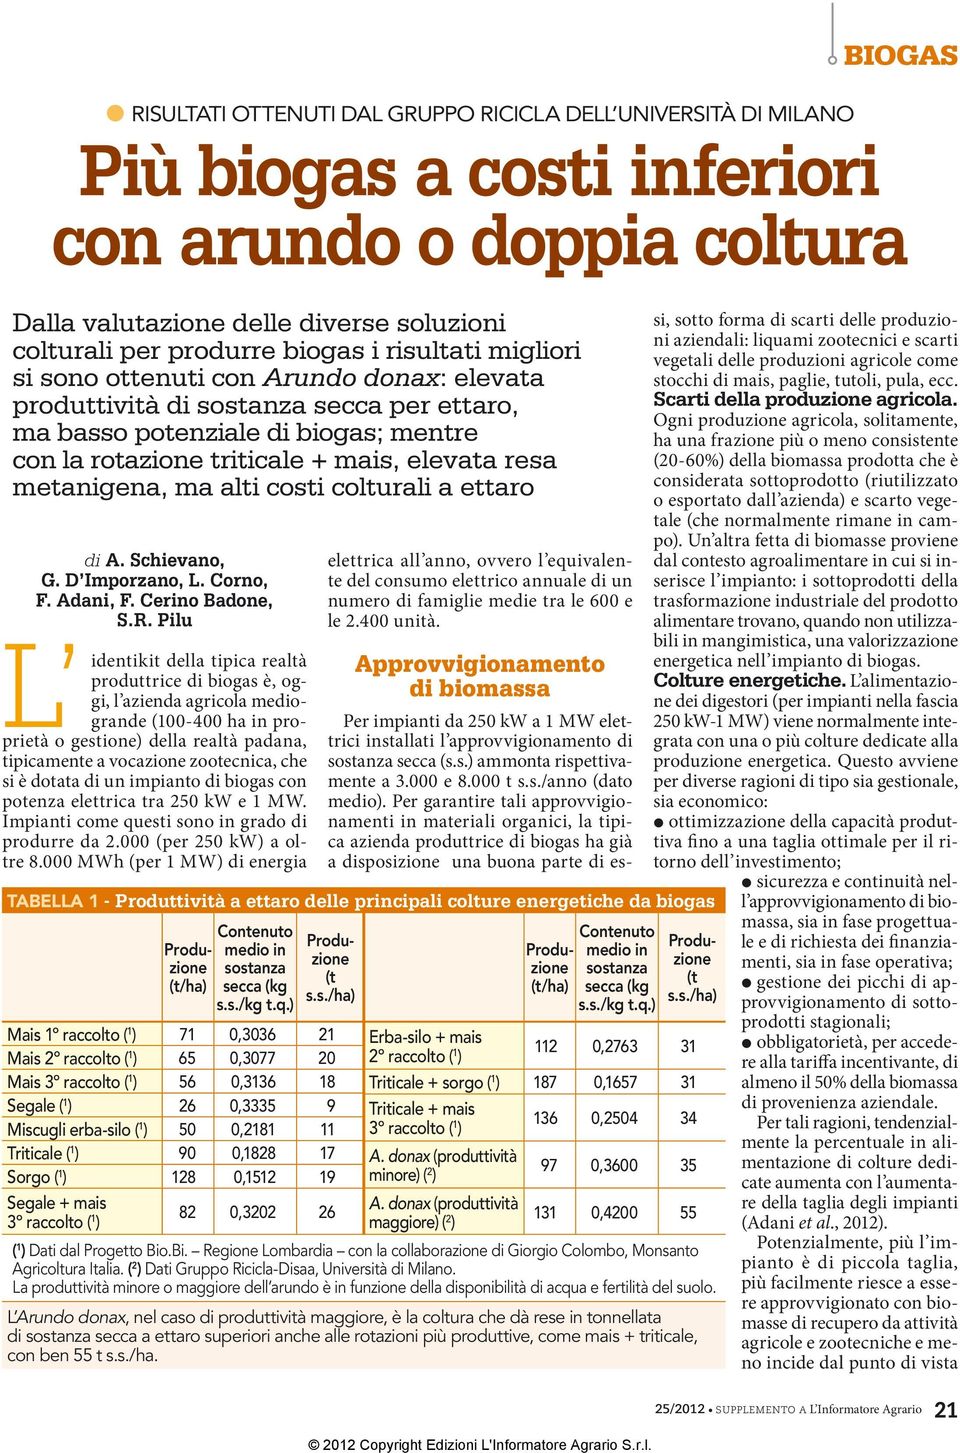 metanigena, ma alti costi colturali a ettaro di A. Schievano, G. D Imporzano, L. Corno, F. Adani, F. Cerino Badone, S.R.